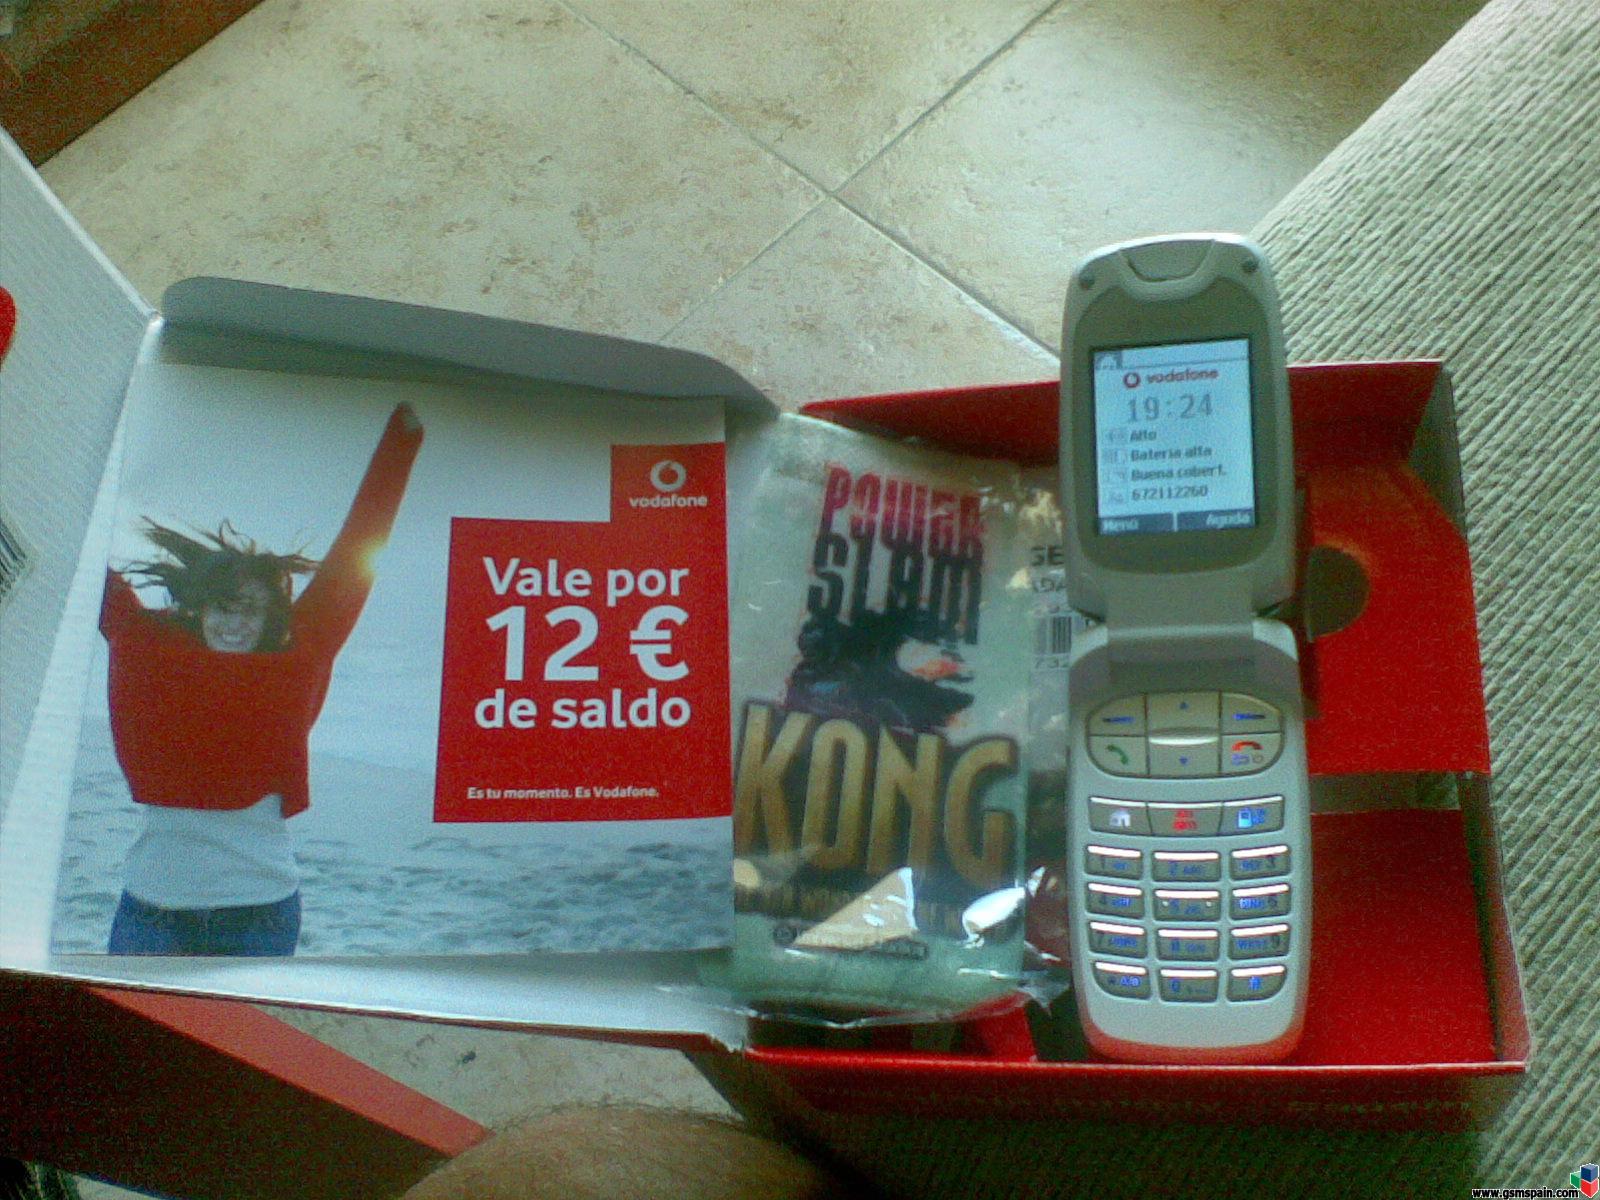 Vendo Vodafone simply nuevo, blanco, 40 euros.Alicante.